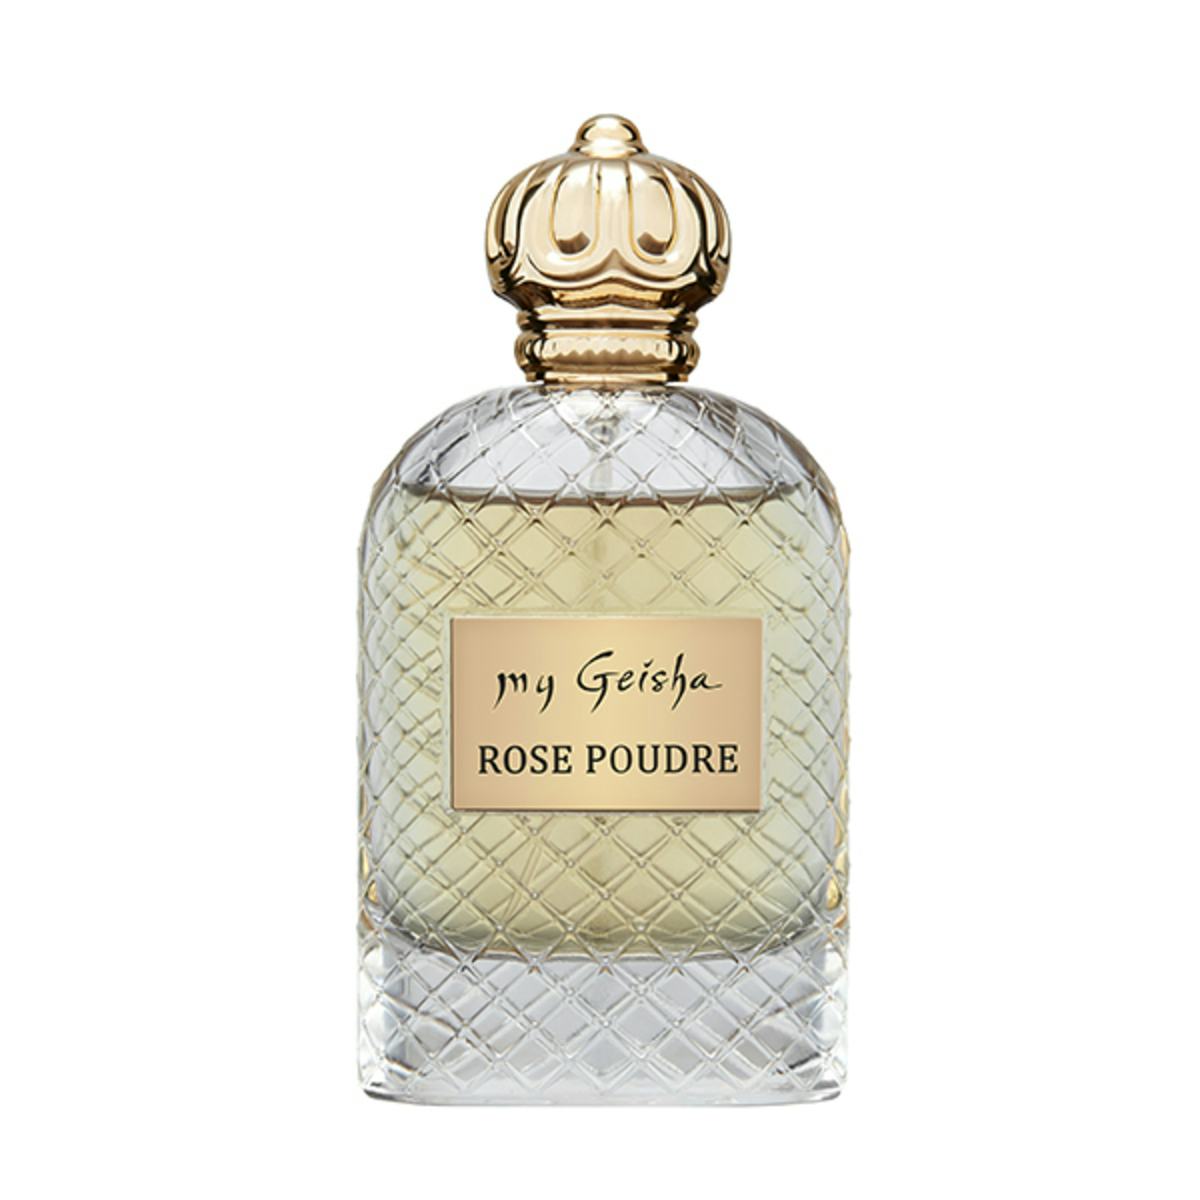 Extrait de parfum Rose Poudre 100 ml, handwerkliches Produkt für den Direktverkauf in der Schweiz